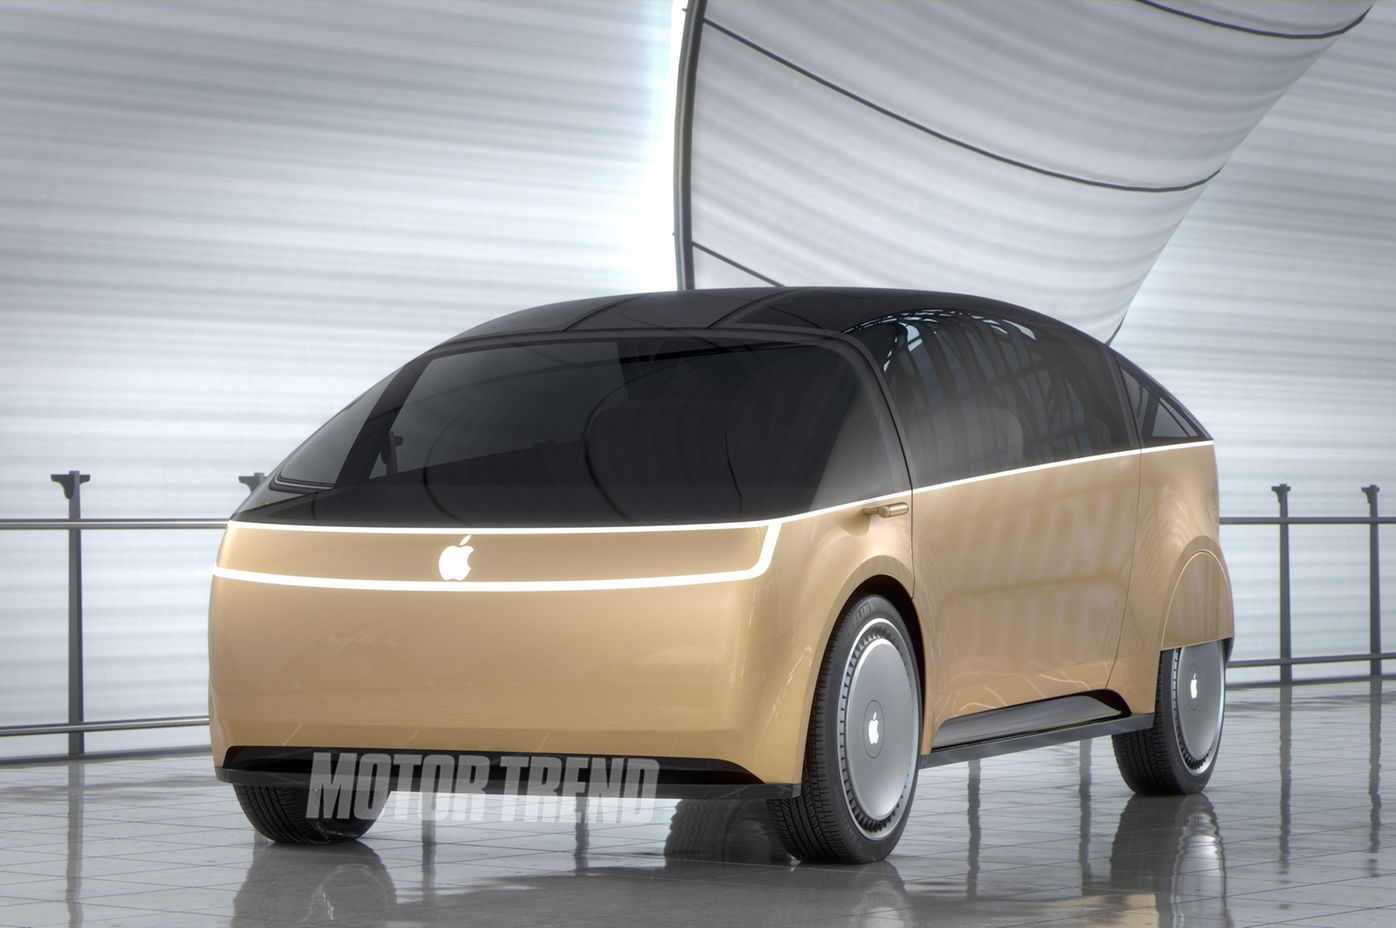 Mockup/render 3D do "Apple Car"